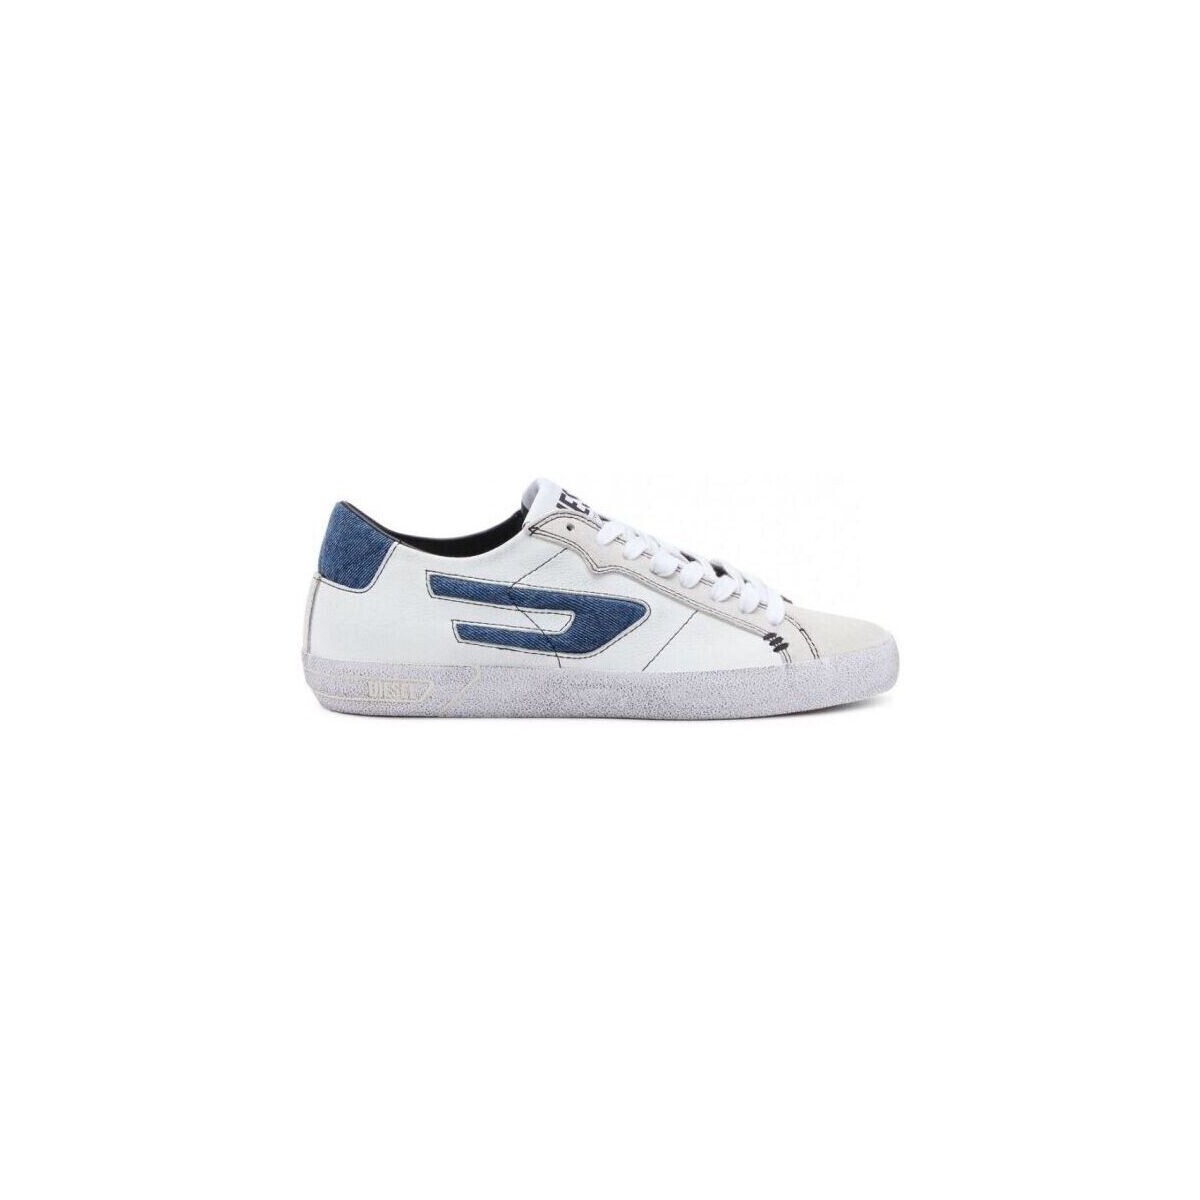 Scarpe Donna Sneakers Diesel Y02825 P5519 LEROJI-H9744 Bianco